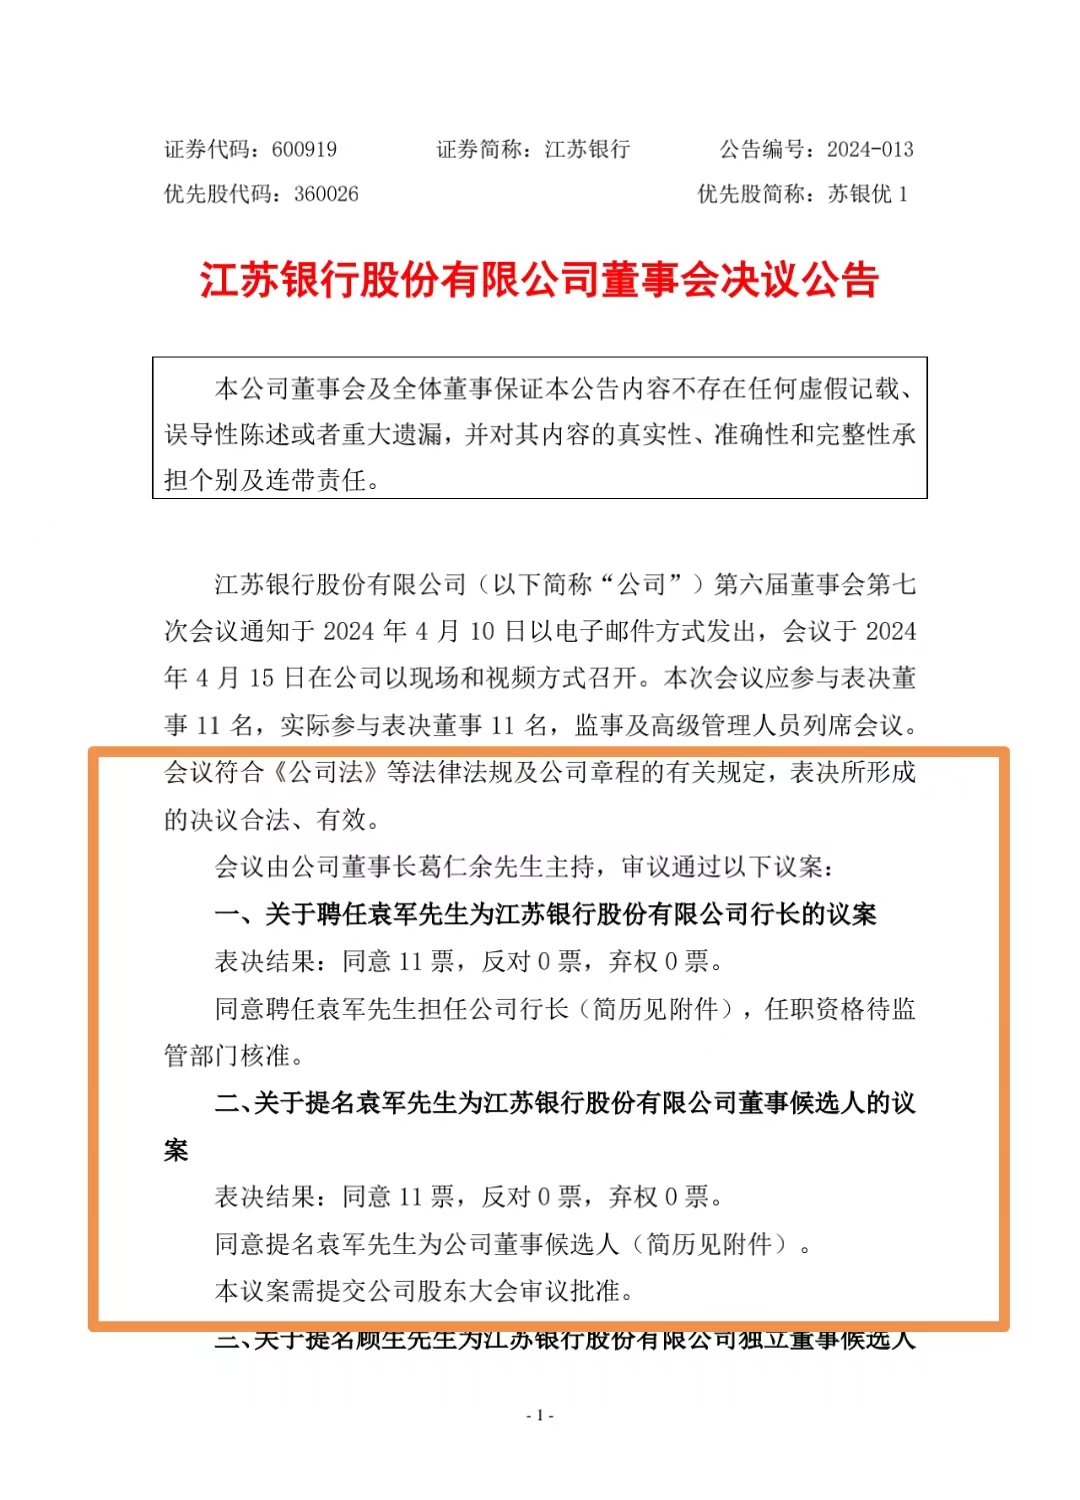 任前公示半个月后，袁军正式获聘江苏银行行长，今年已有多家上市银行走马换“行长”